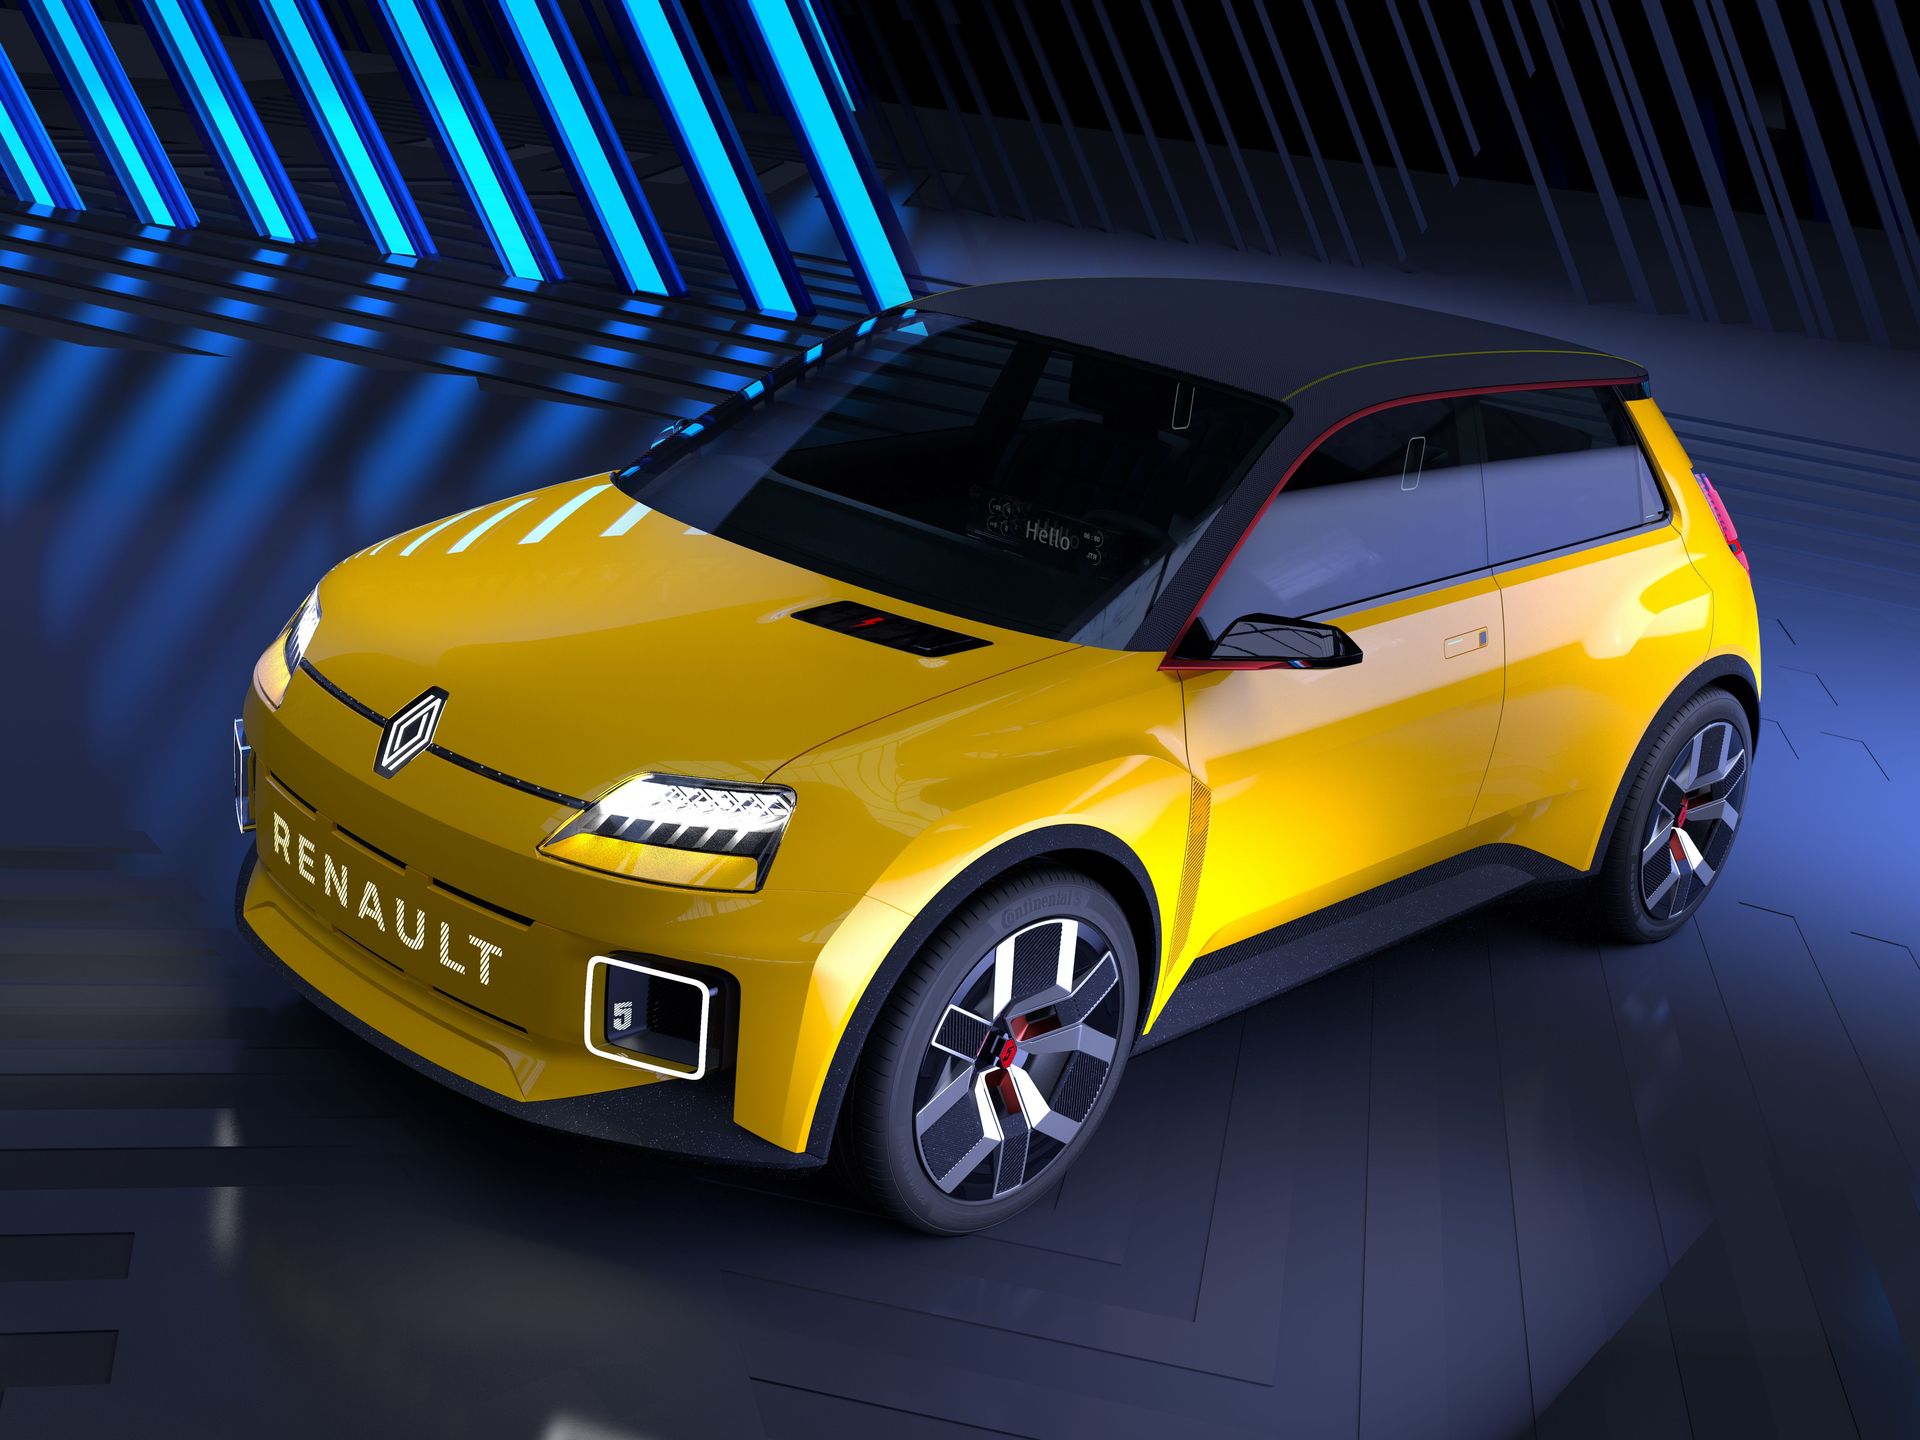 Prochainement 4L, Super 5 et Alpine électriques  Renault-5-Prototype-2021-01